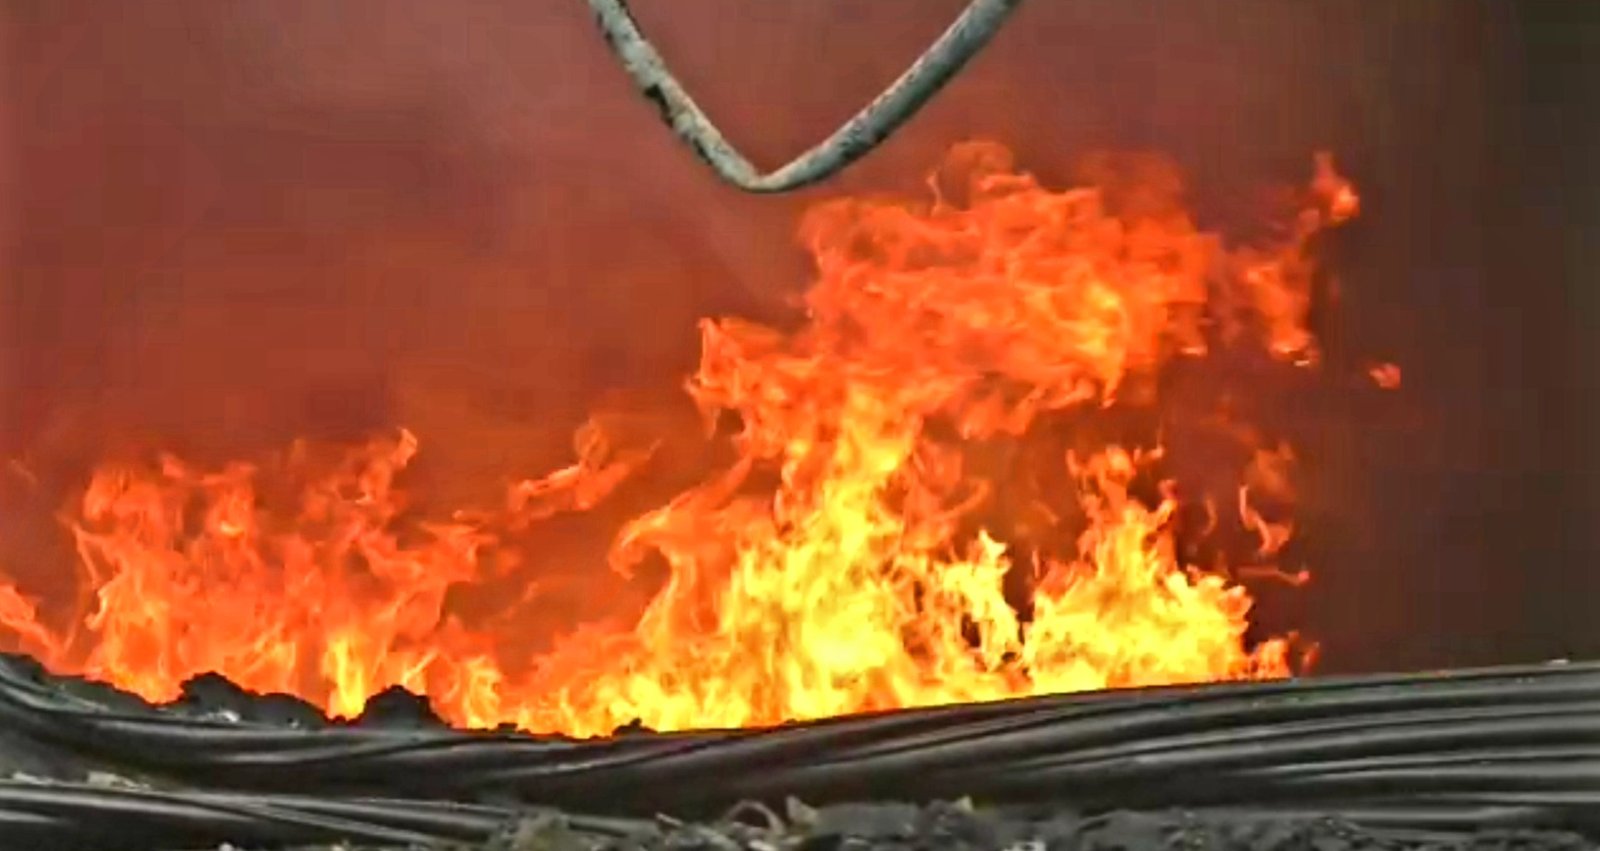 हिंदी समाचार |भीषण आग में 10 गोदाम जलकर खाक।